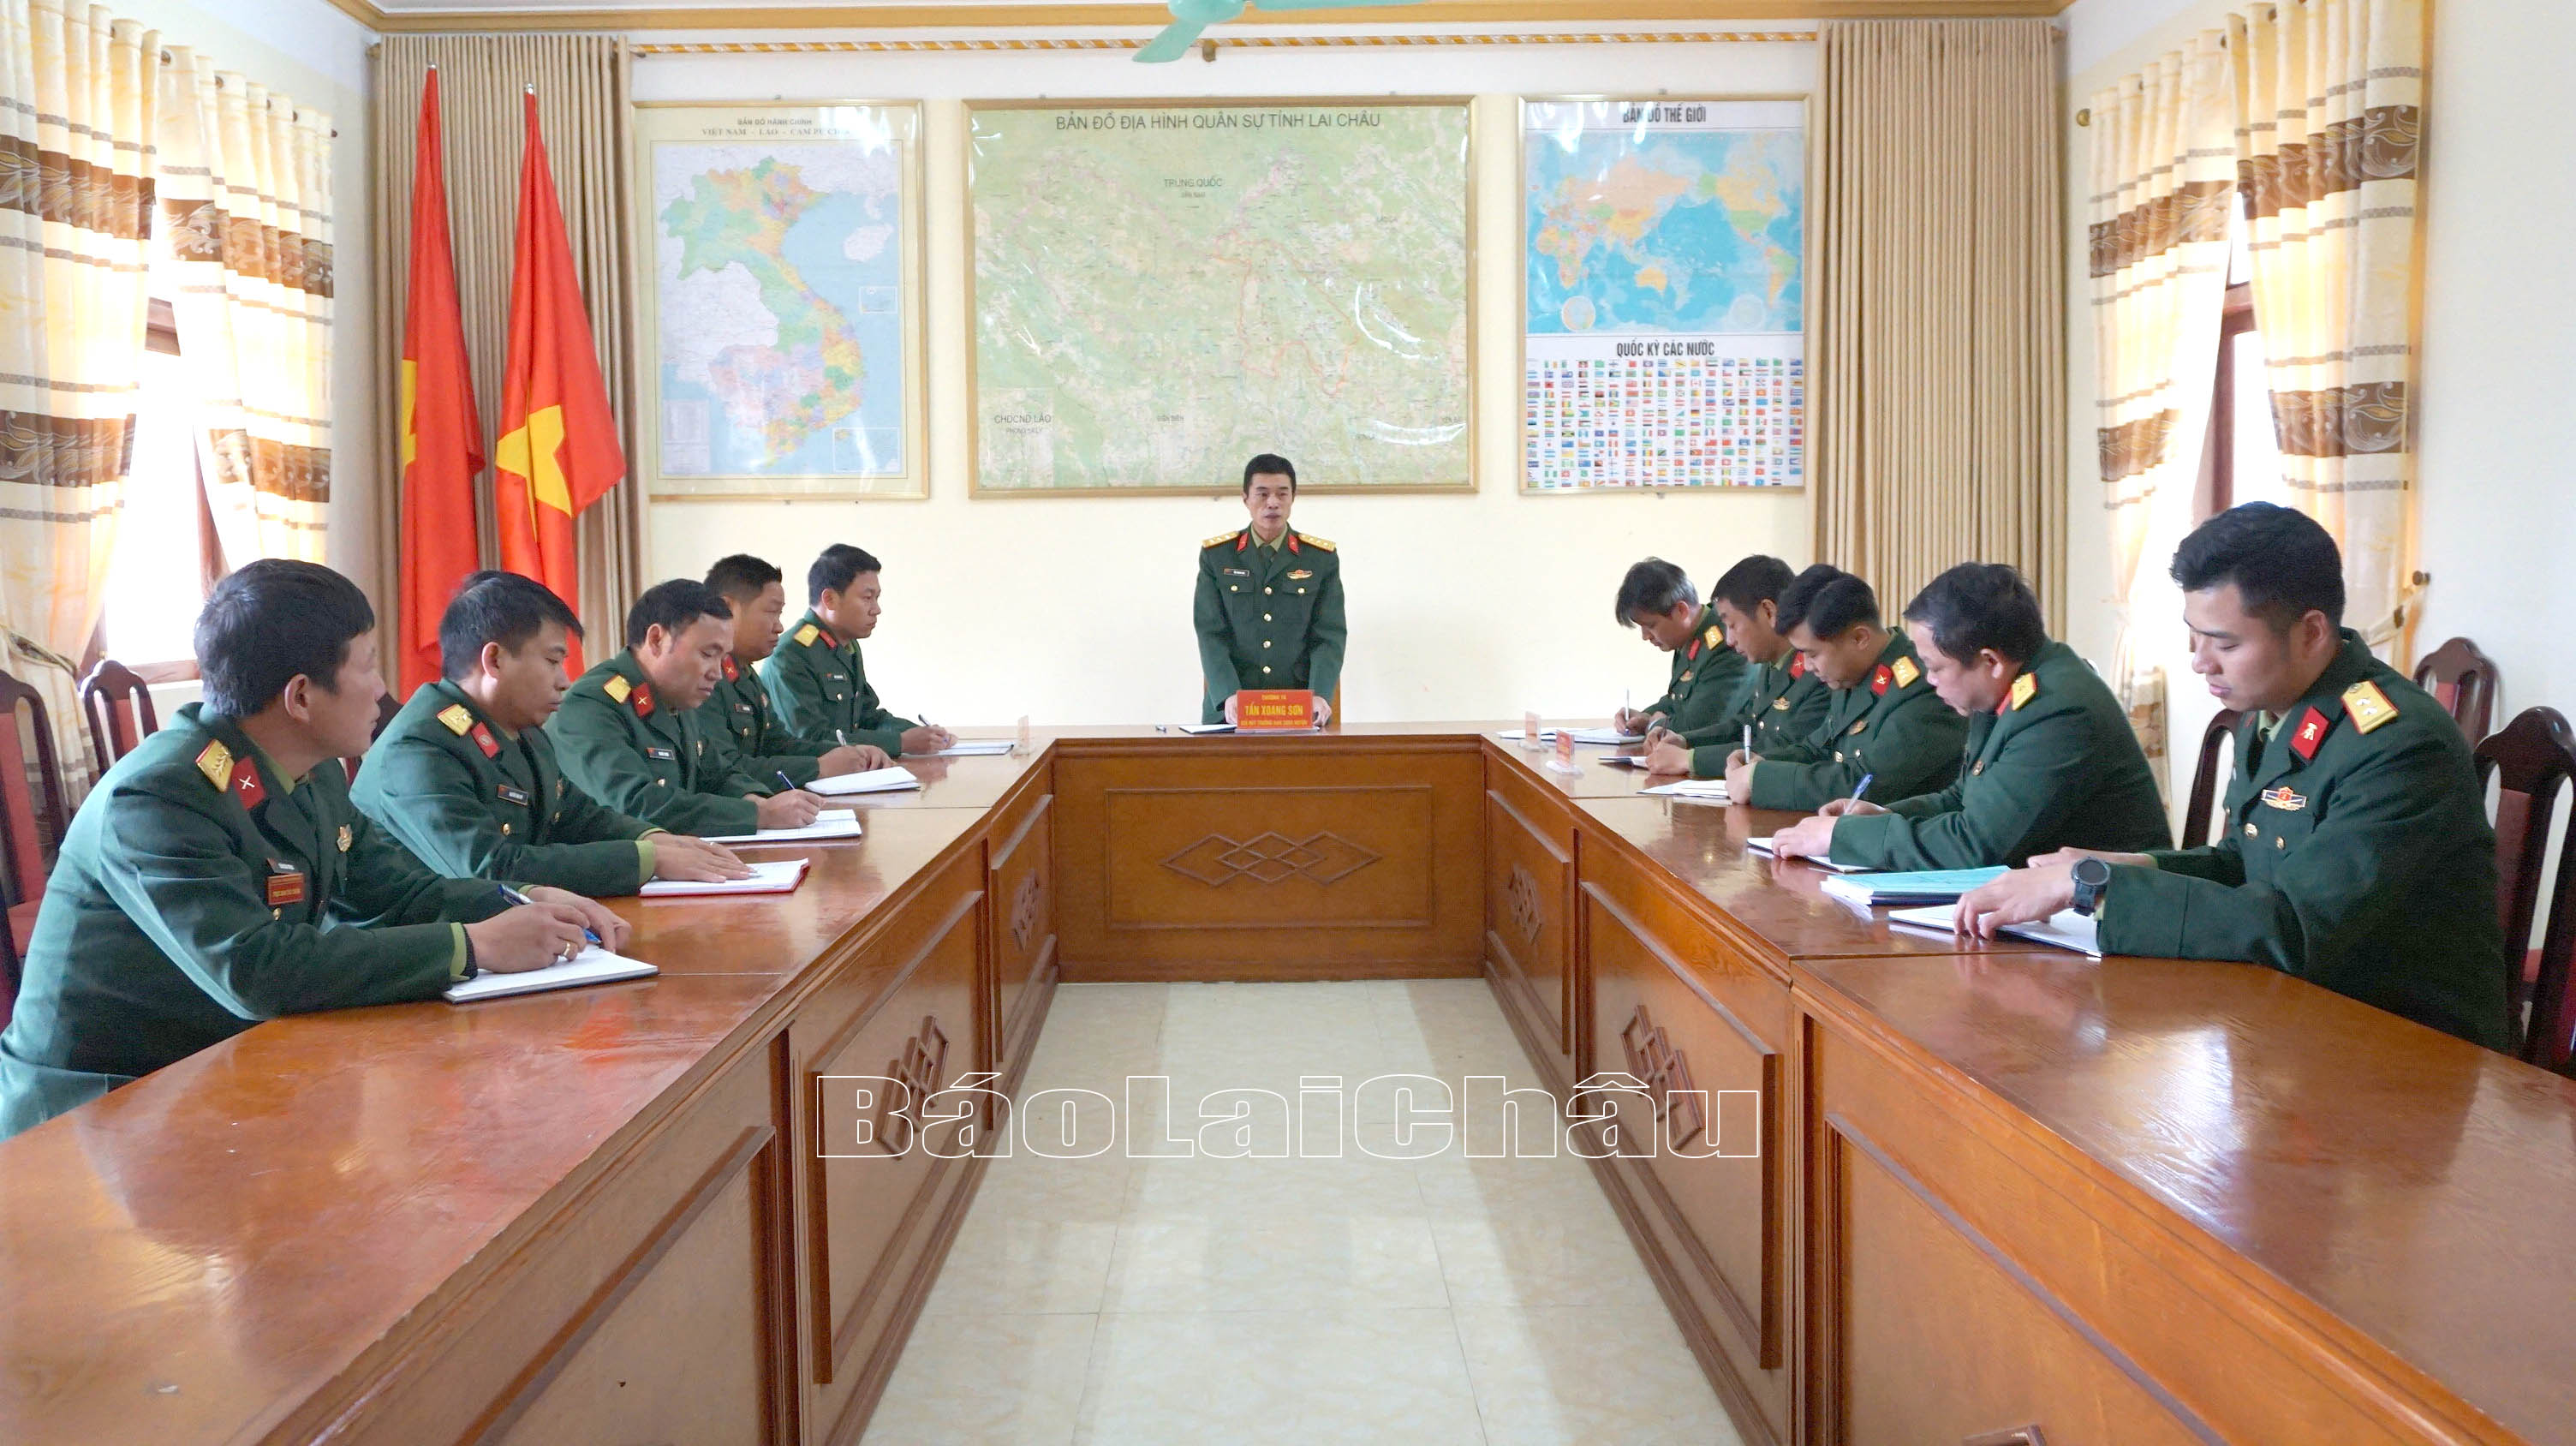 Ban Chỉ huy Quân sự huyện Sìn Hồ chú trọng công tác giáo dục chính trị tư tưởng cho cán bộ.